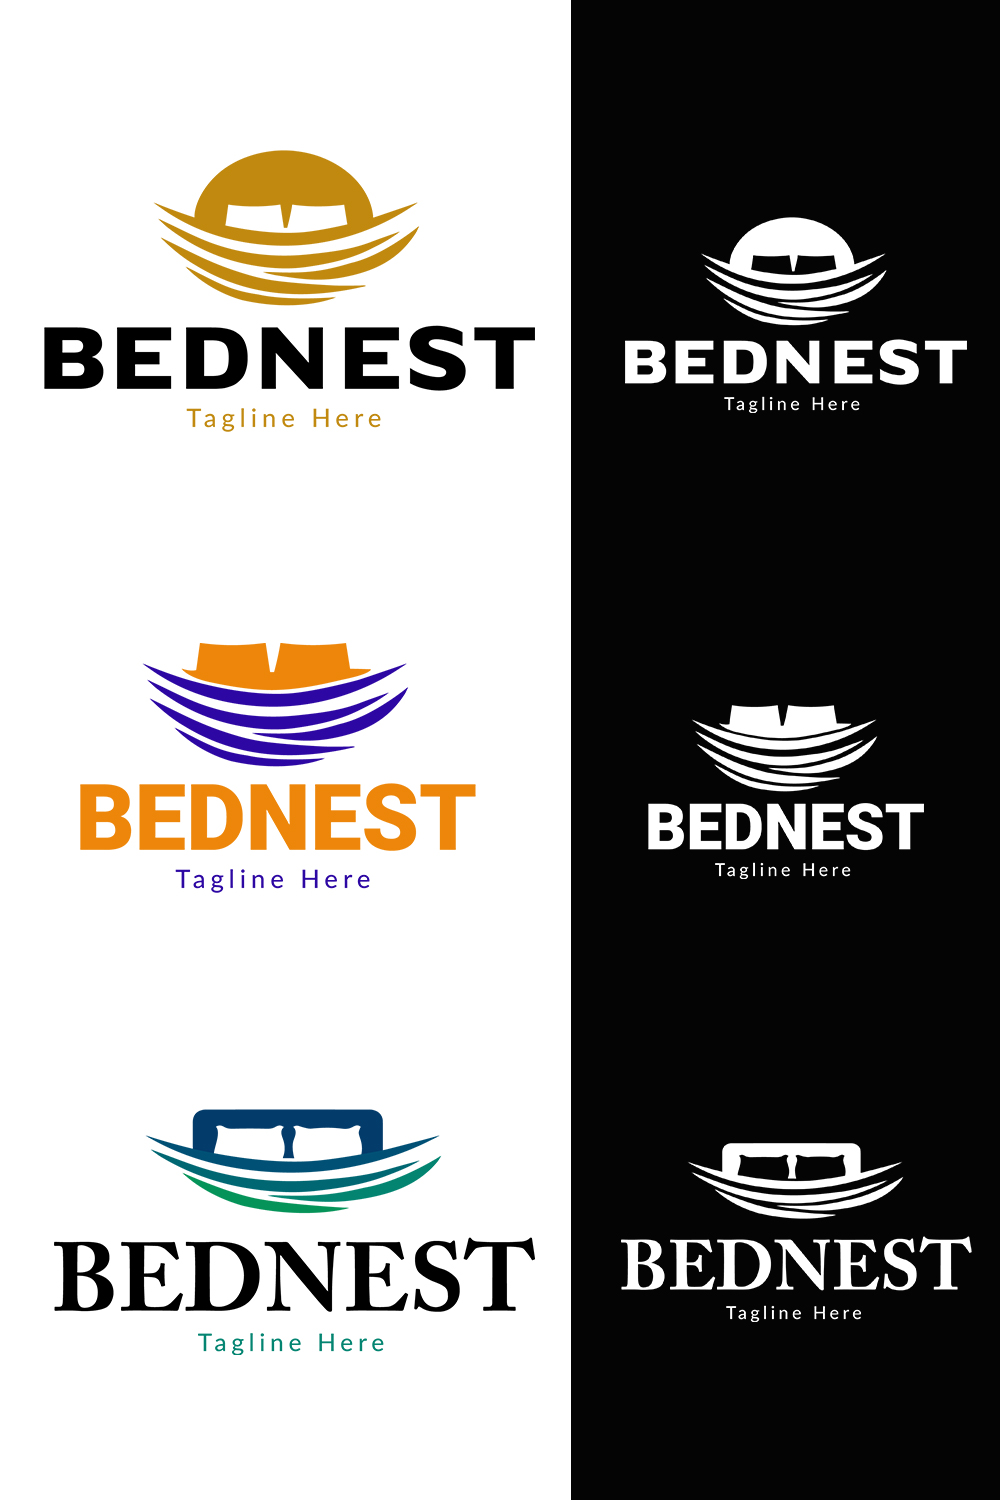 Minimal modern logo "bednest logo" pinterest preview image.